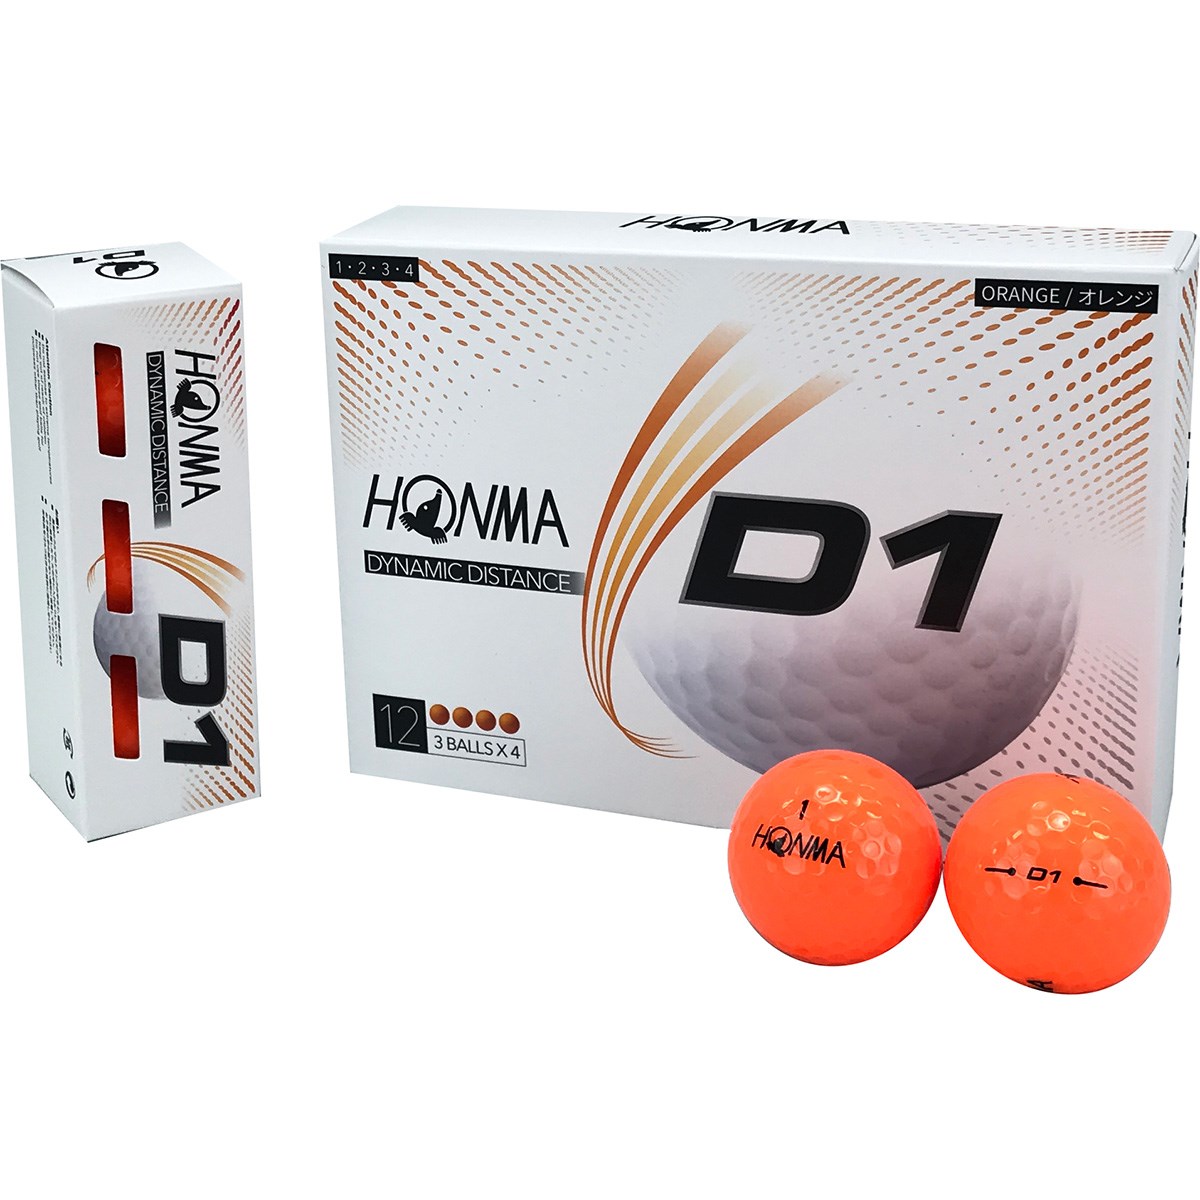 本間ゴルフ HONMA D1 ボール 2020年モデル 3ダースセット 3ダース(36個入り) オレンジ